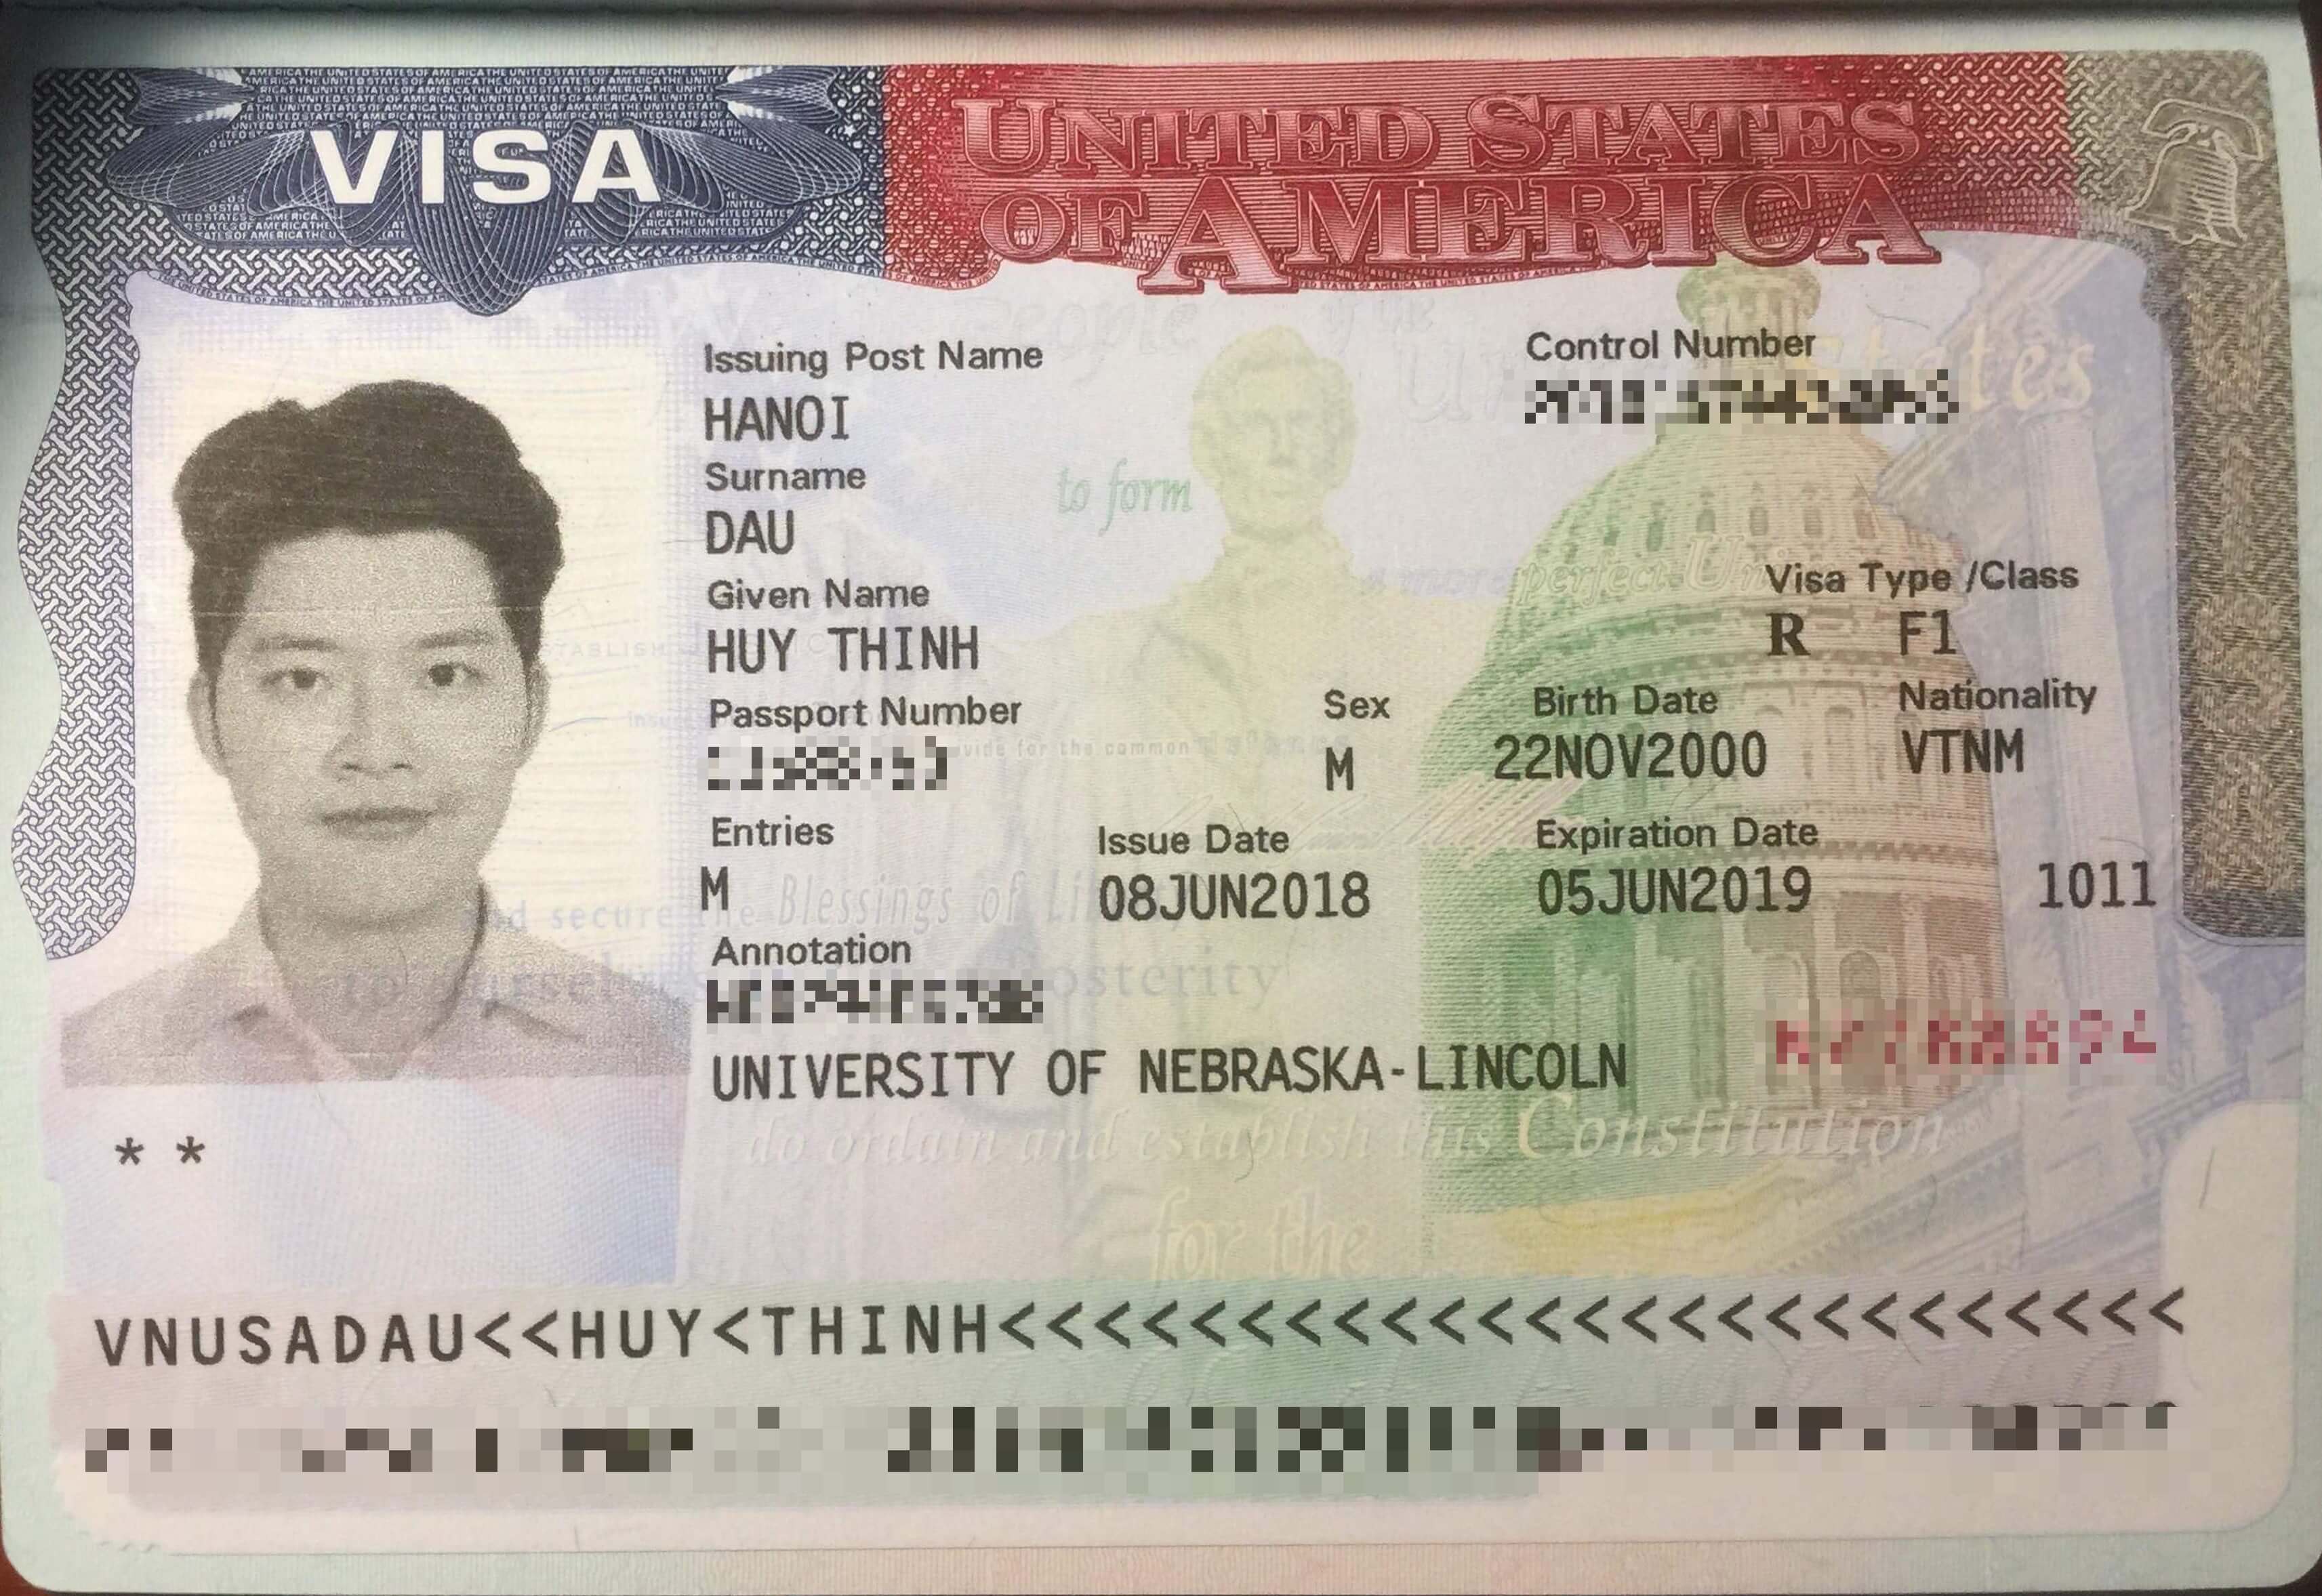 Chúc mừng bạn Đậu Huy Thịnh đã đậu visa du học Mỹ